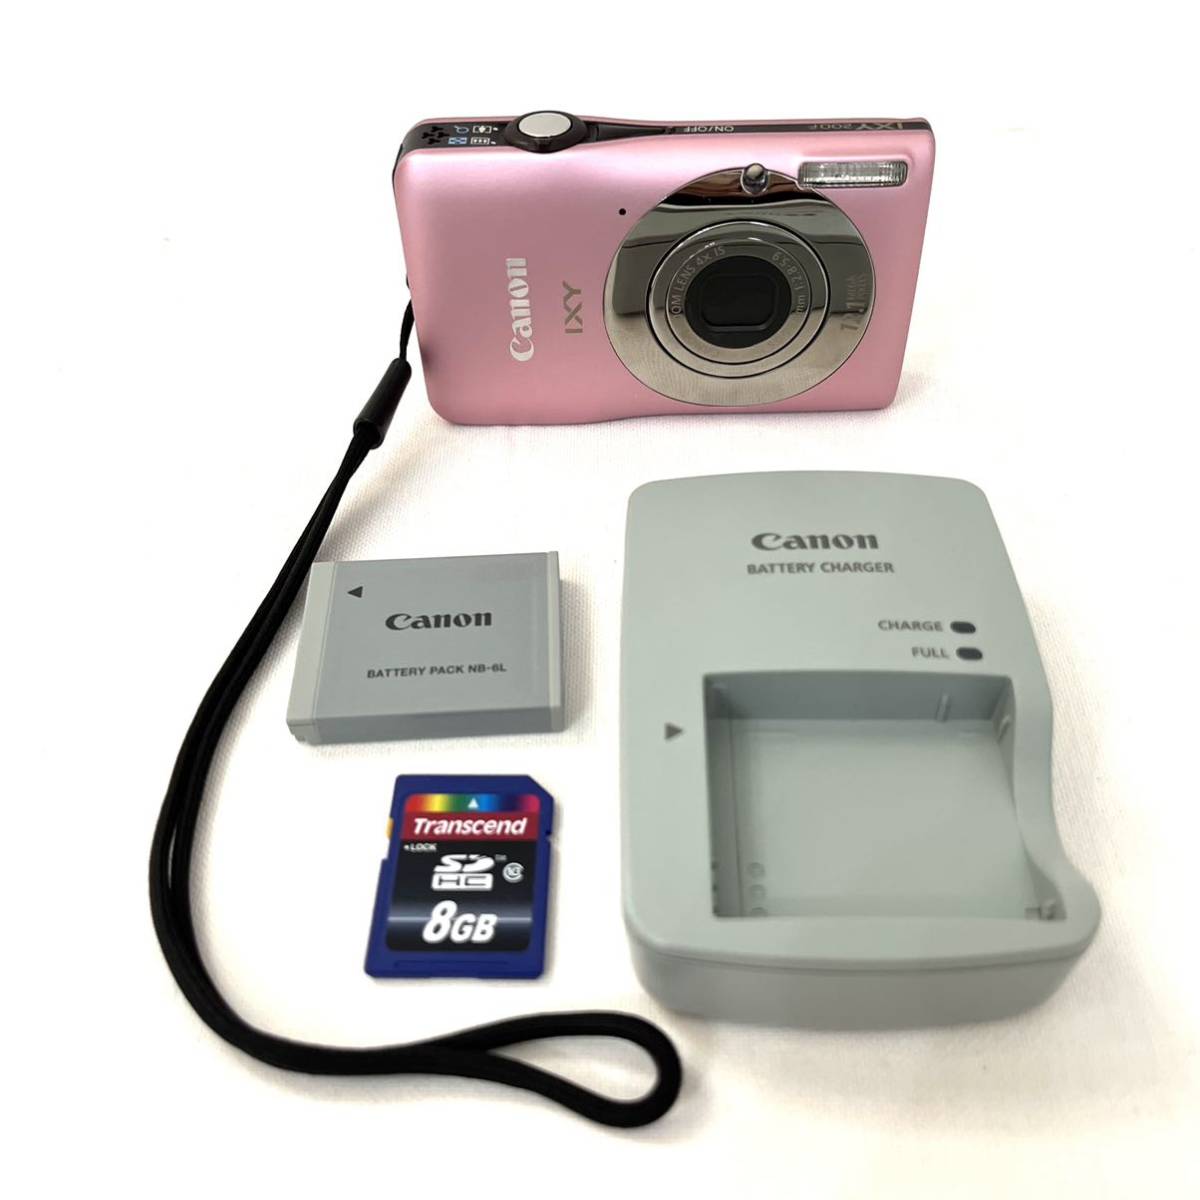 【メモリカード付属】キヤノン Canon コンパクトデジタルカメラ IXY 200F ピンク